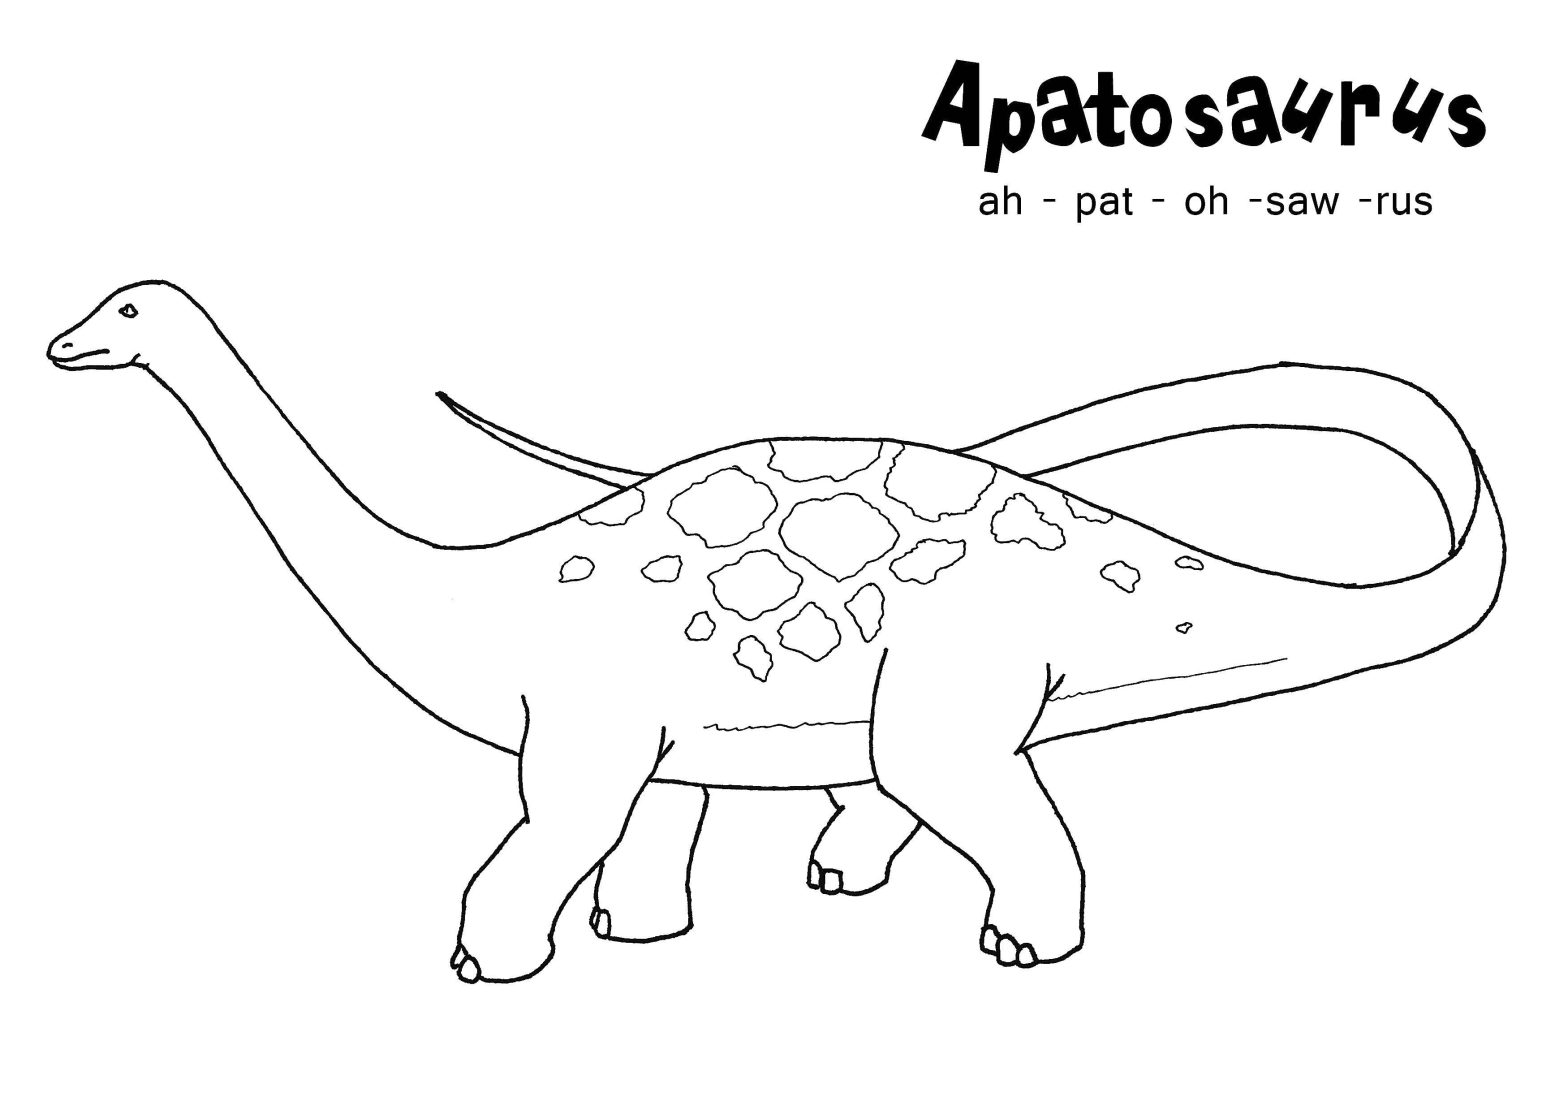 Раскраска динозавра для детей